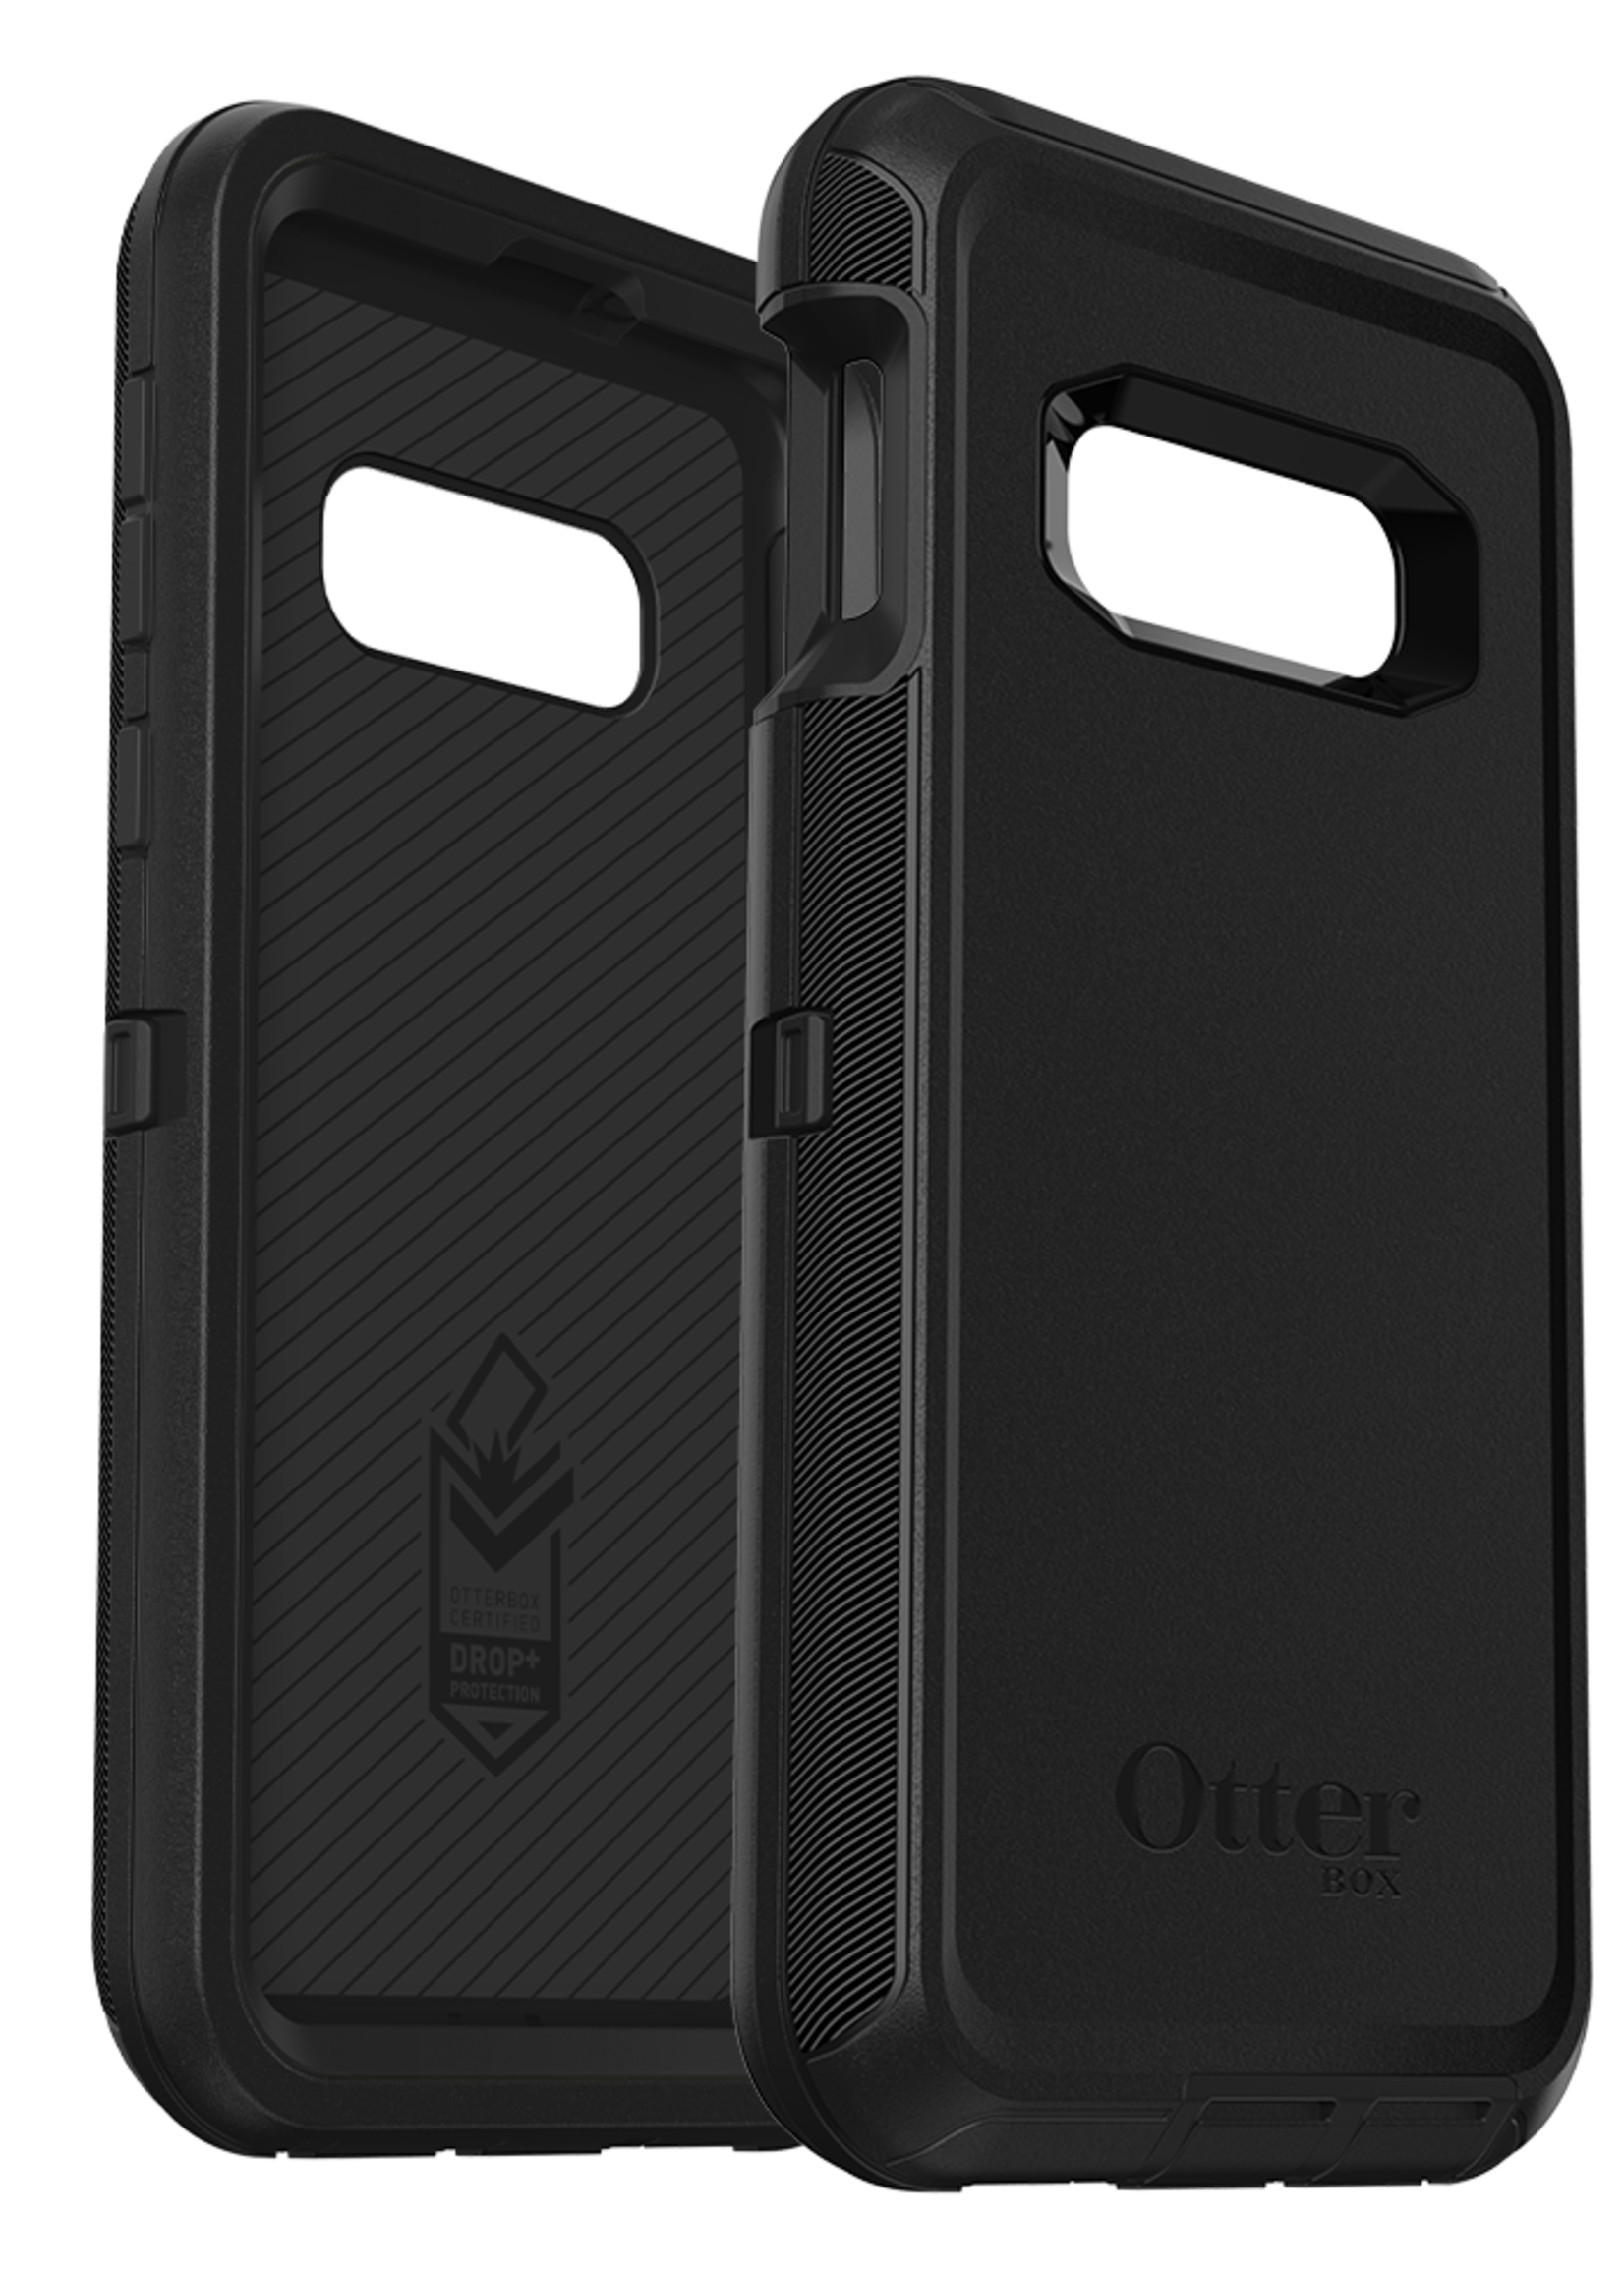 Otterbox OtterBox - Defender Case for Samsung Galaxy S10e - Black